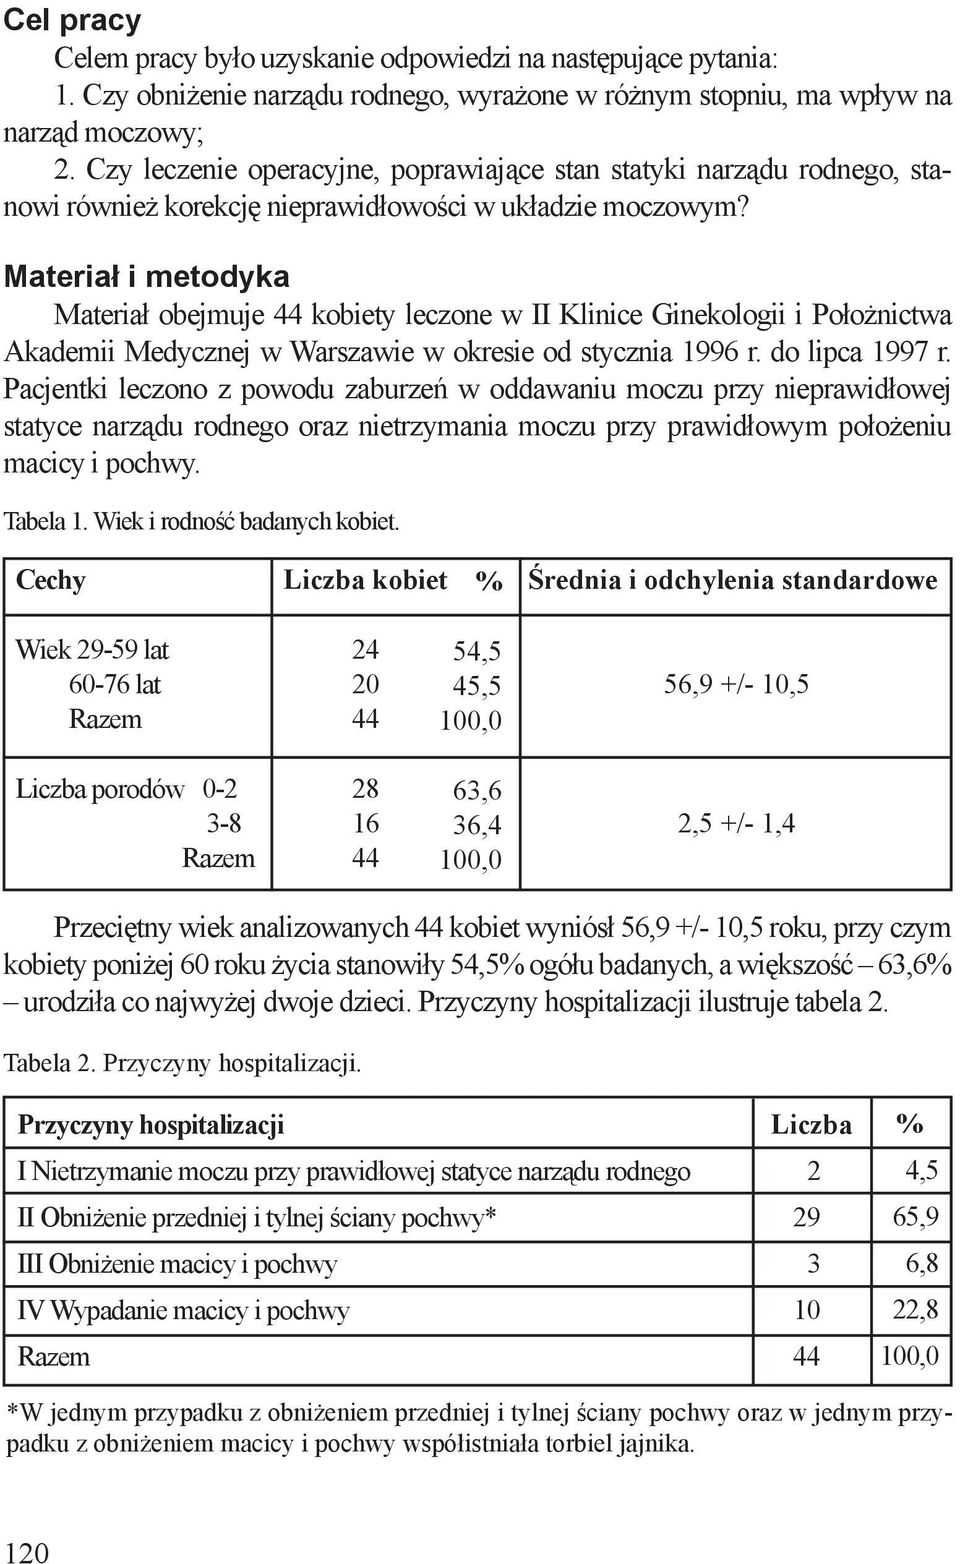 Materiał i metodyka Materiał obejmuje 44 kobiety leczone w II Klinice Ginekologii i Położnictwa Akademii Medycznej w Warszawie w okresie od stycznia 1996 r. do lipca 1997 r.